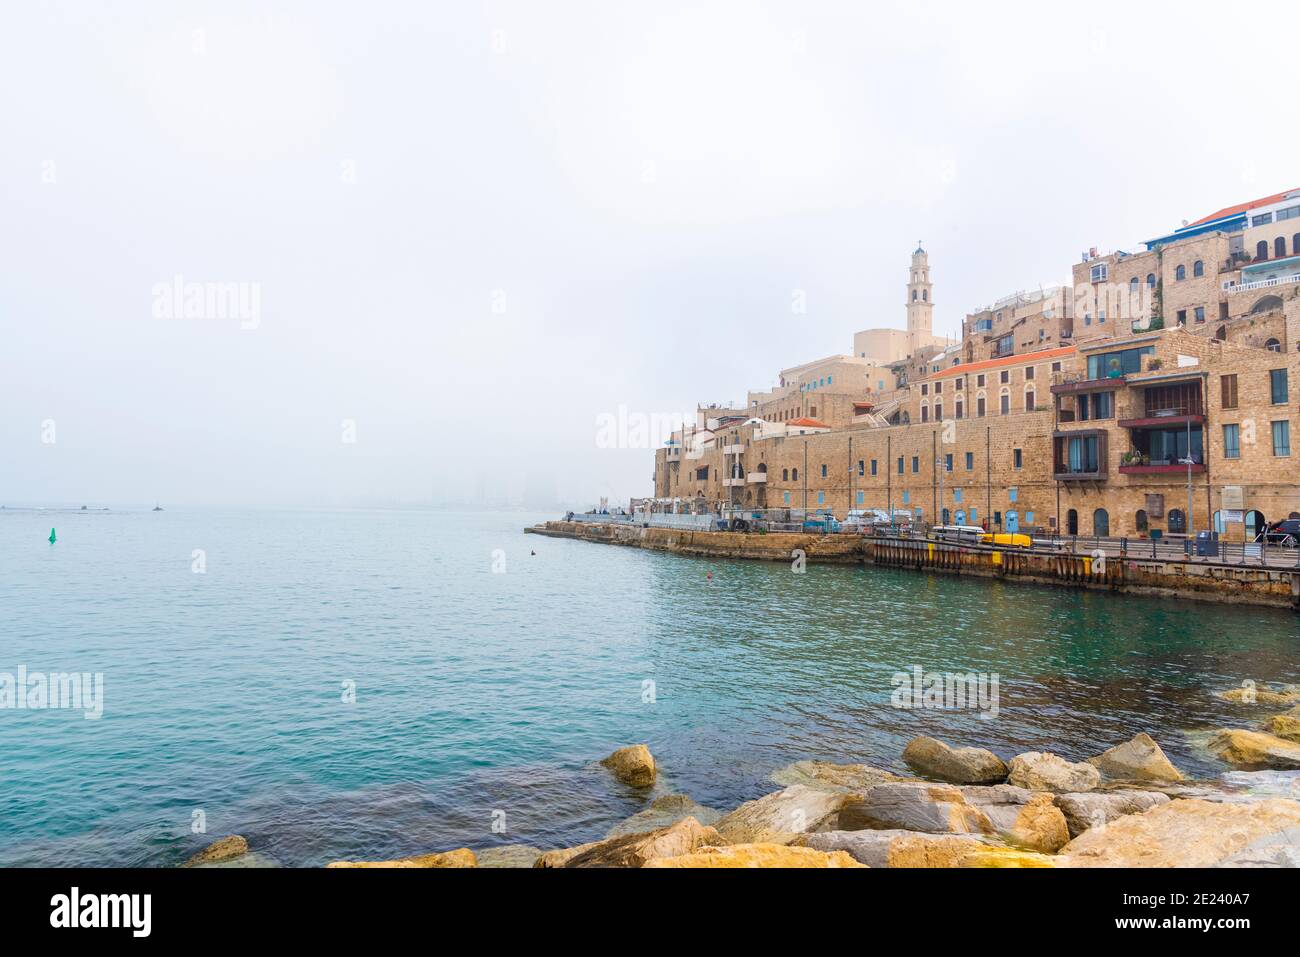 Le vieux port de Jaffa et tel-Aviv en temps de brouillard. Anciennes maisons en pierre face de la mer Méditerranée. Photo de haute qualité Banque D'Images